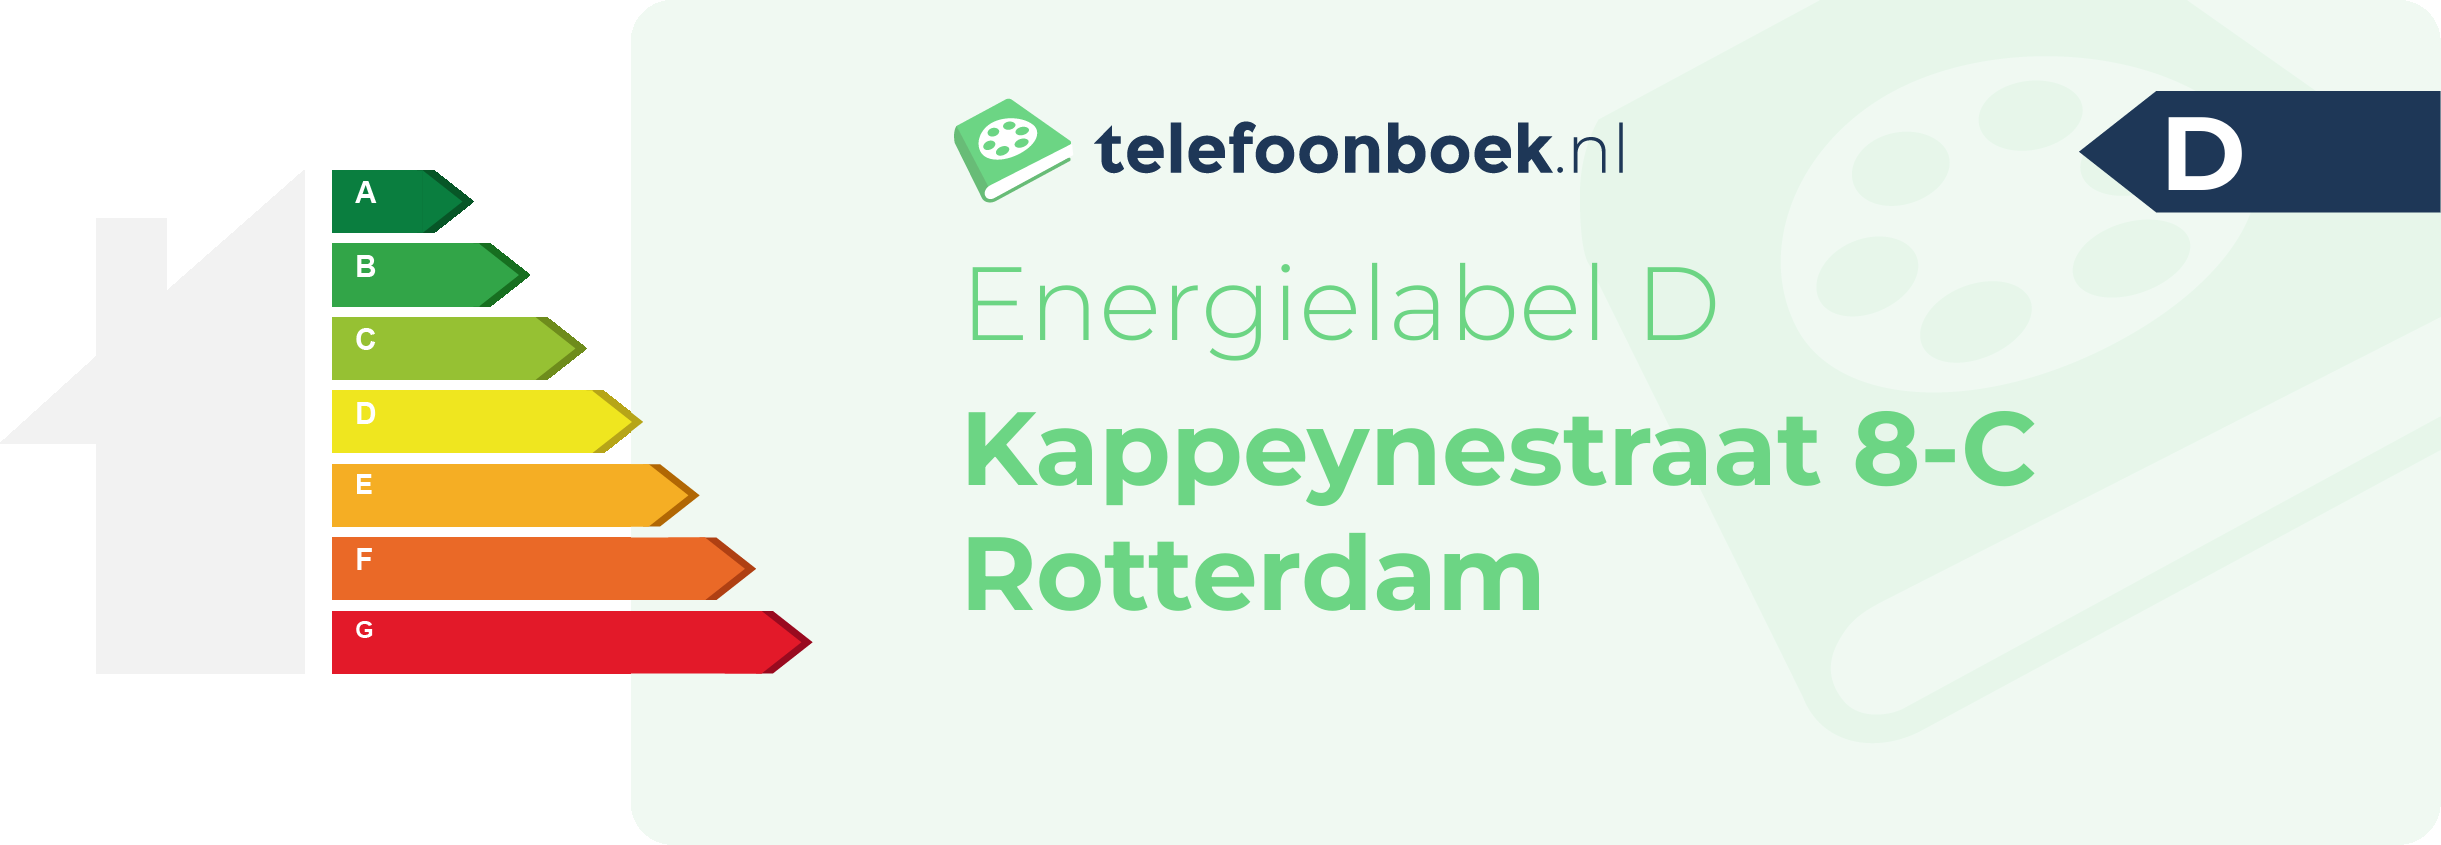 Energielabel Kappeynestraat 8-C Rotterdam